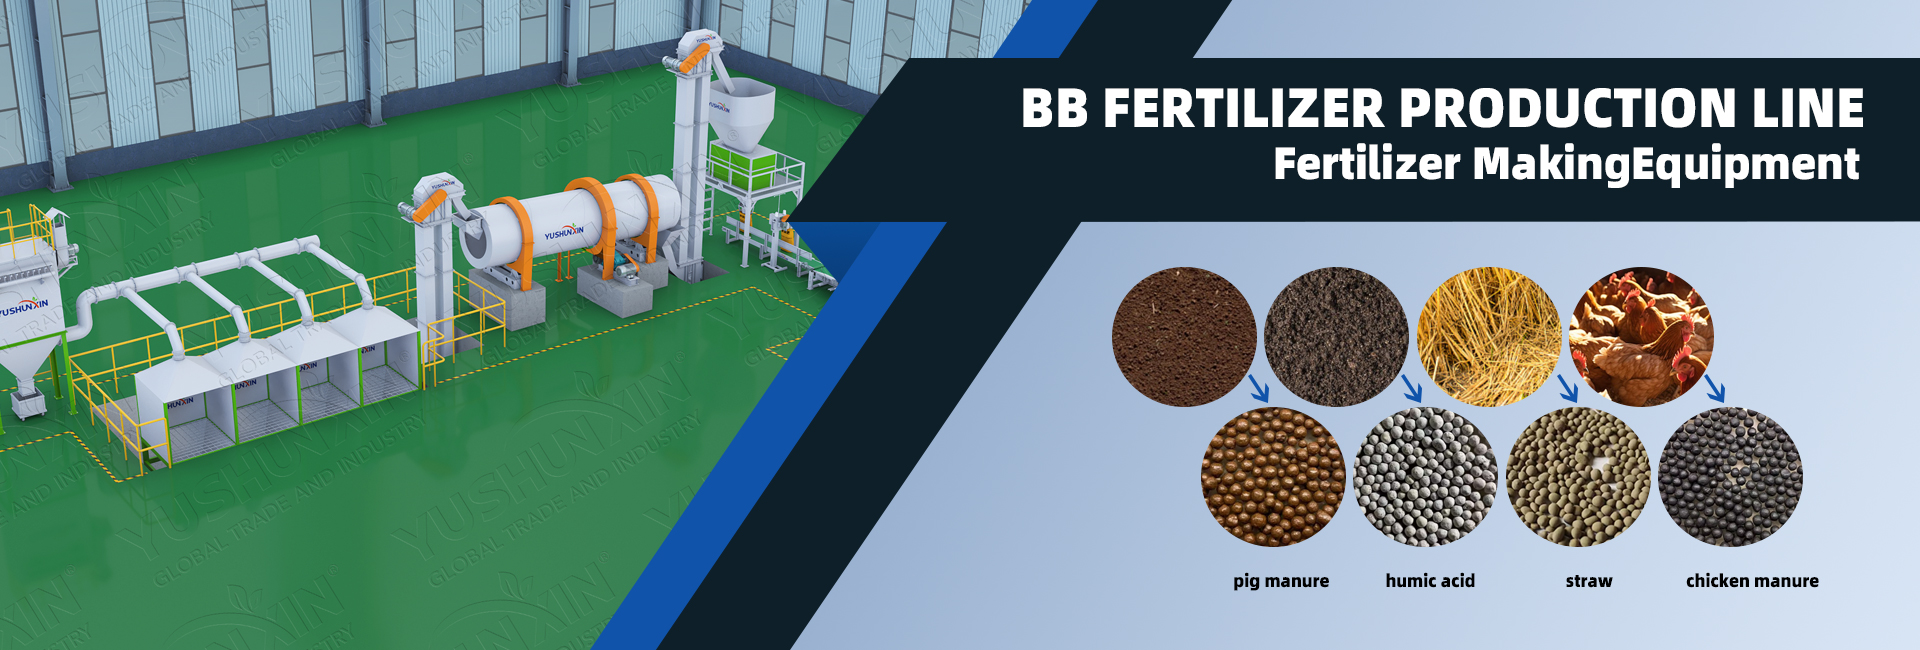 BB fertilizer production line